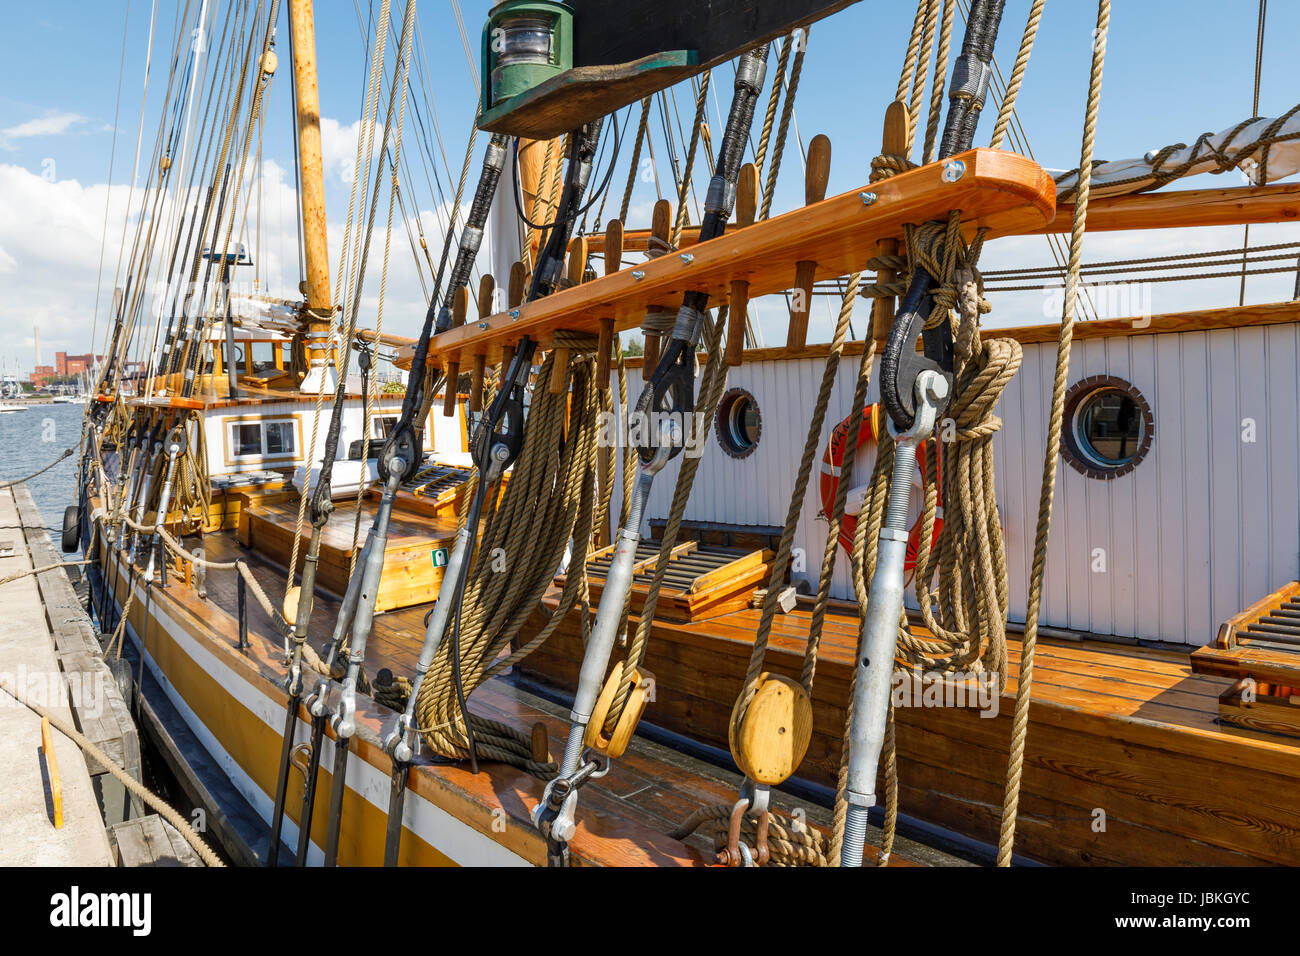 Tackles of ancient wooden sailing ship Stock Photo